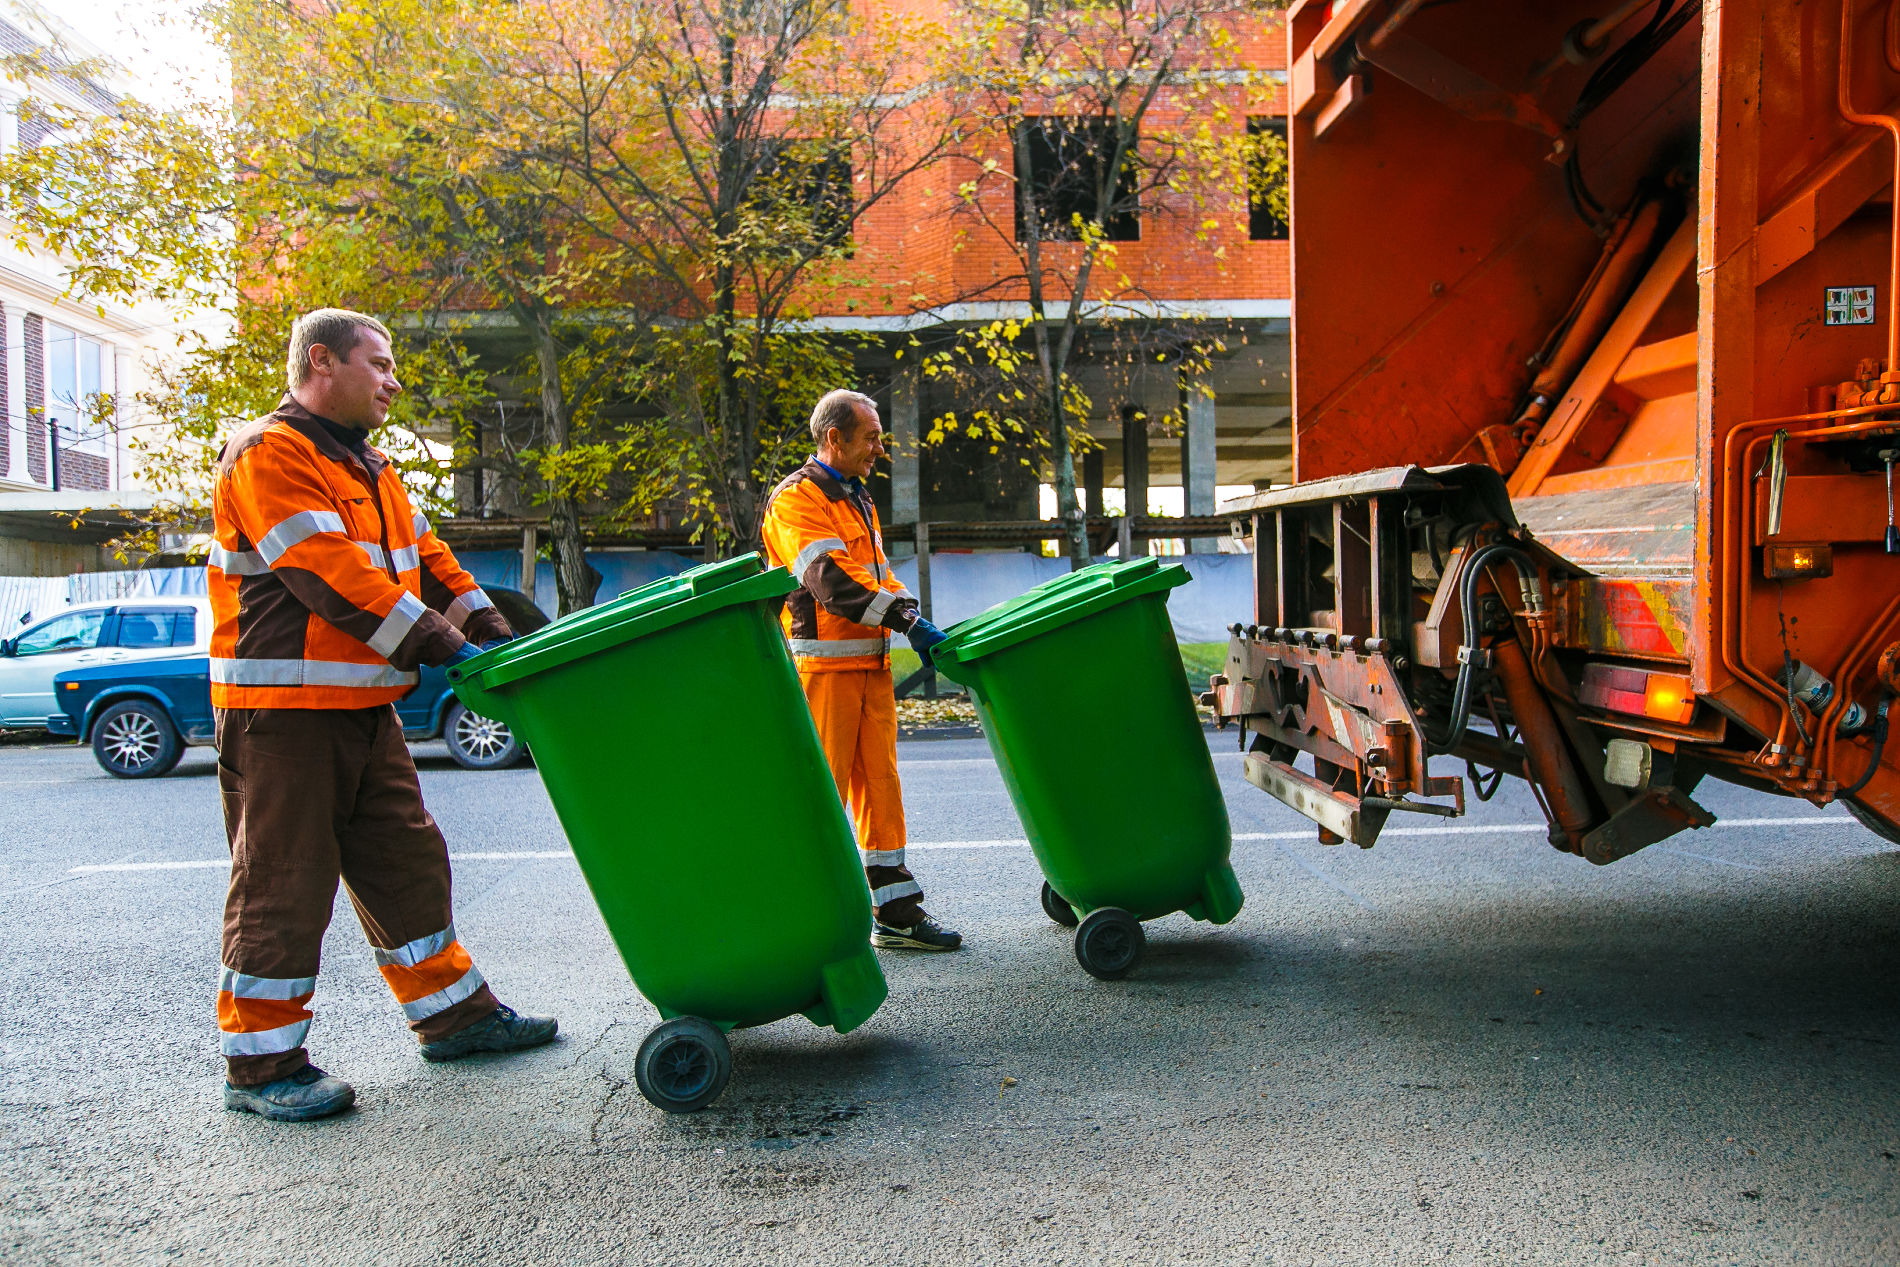 «Спецавтобаза» ищет подрядчика для вывоза мусора из Орджоникидзевского района Екатеринбурга